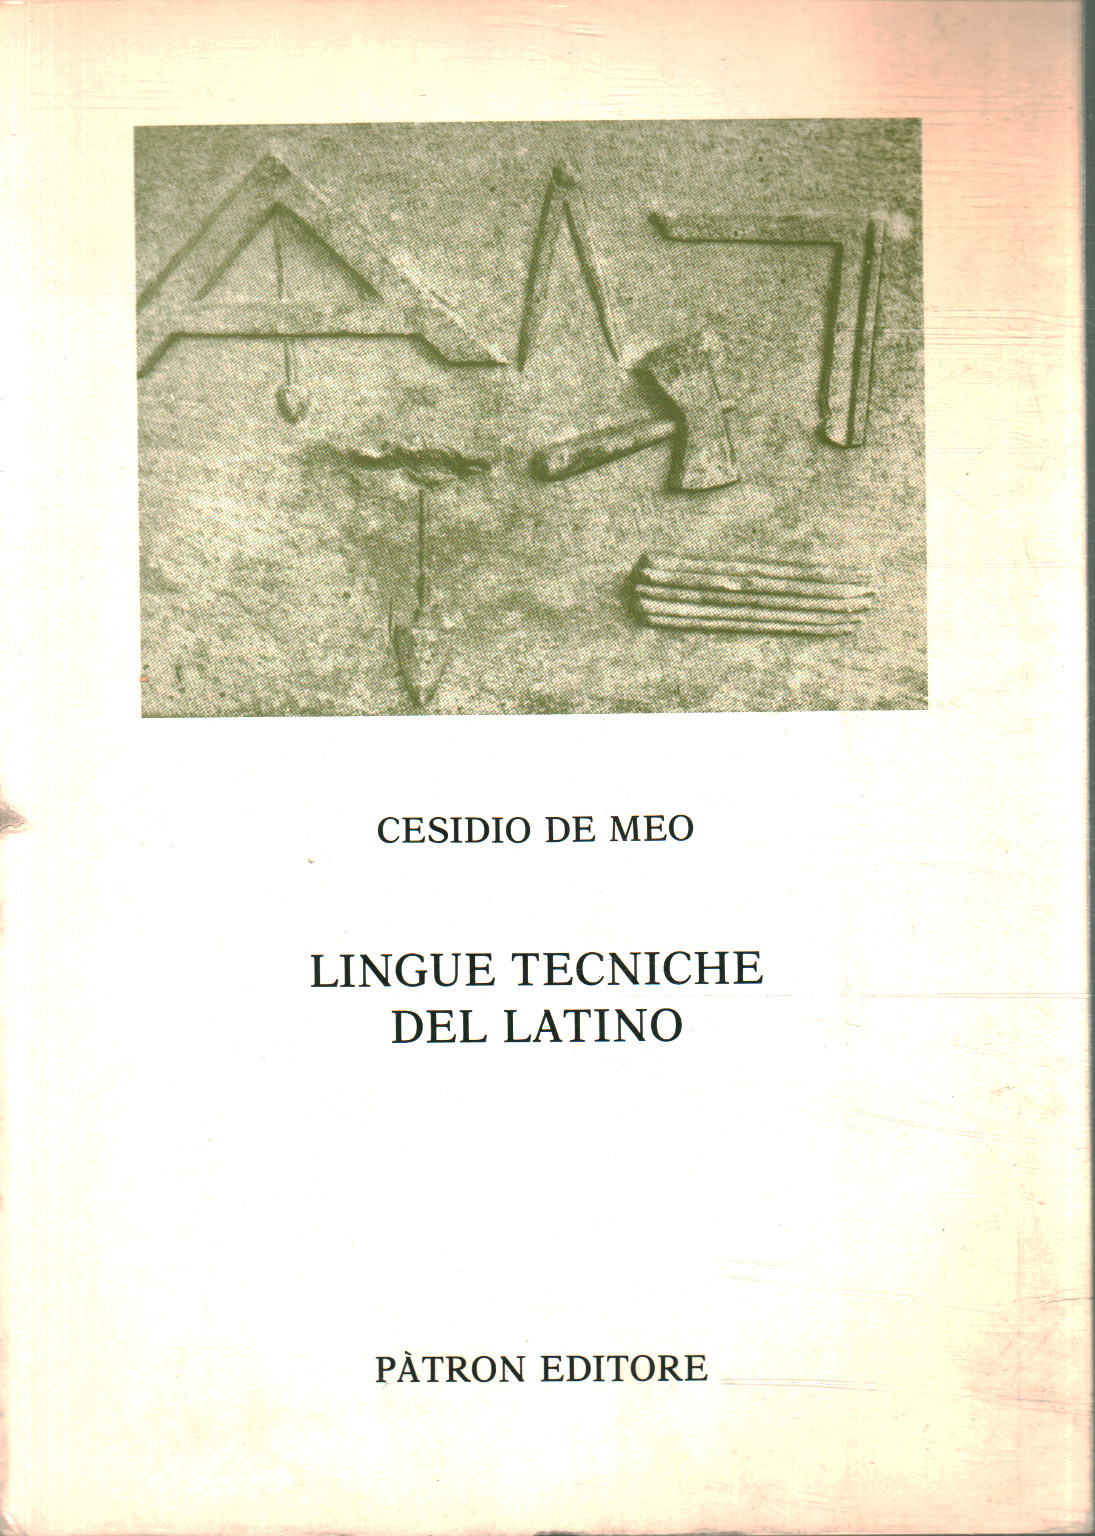 Fachsprachen des Lateinischen, Cesidio De Meo